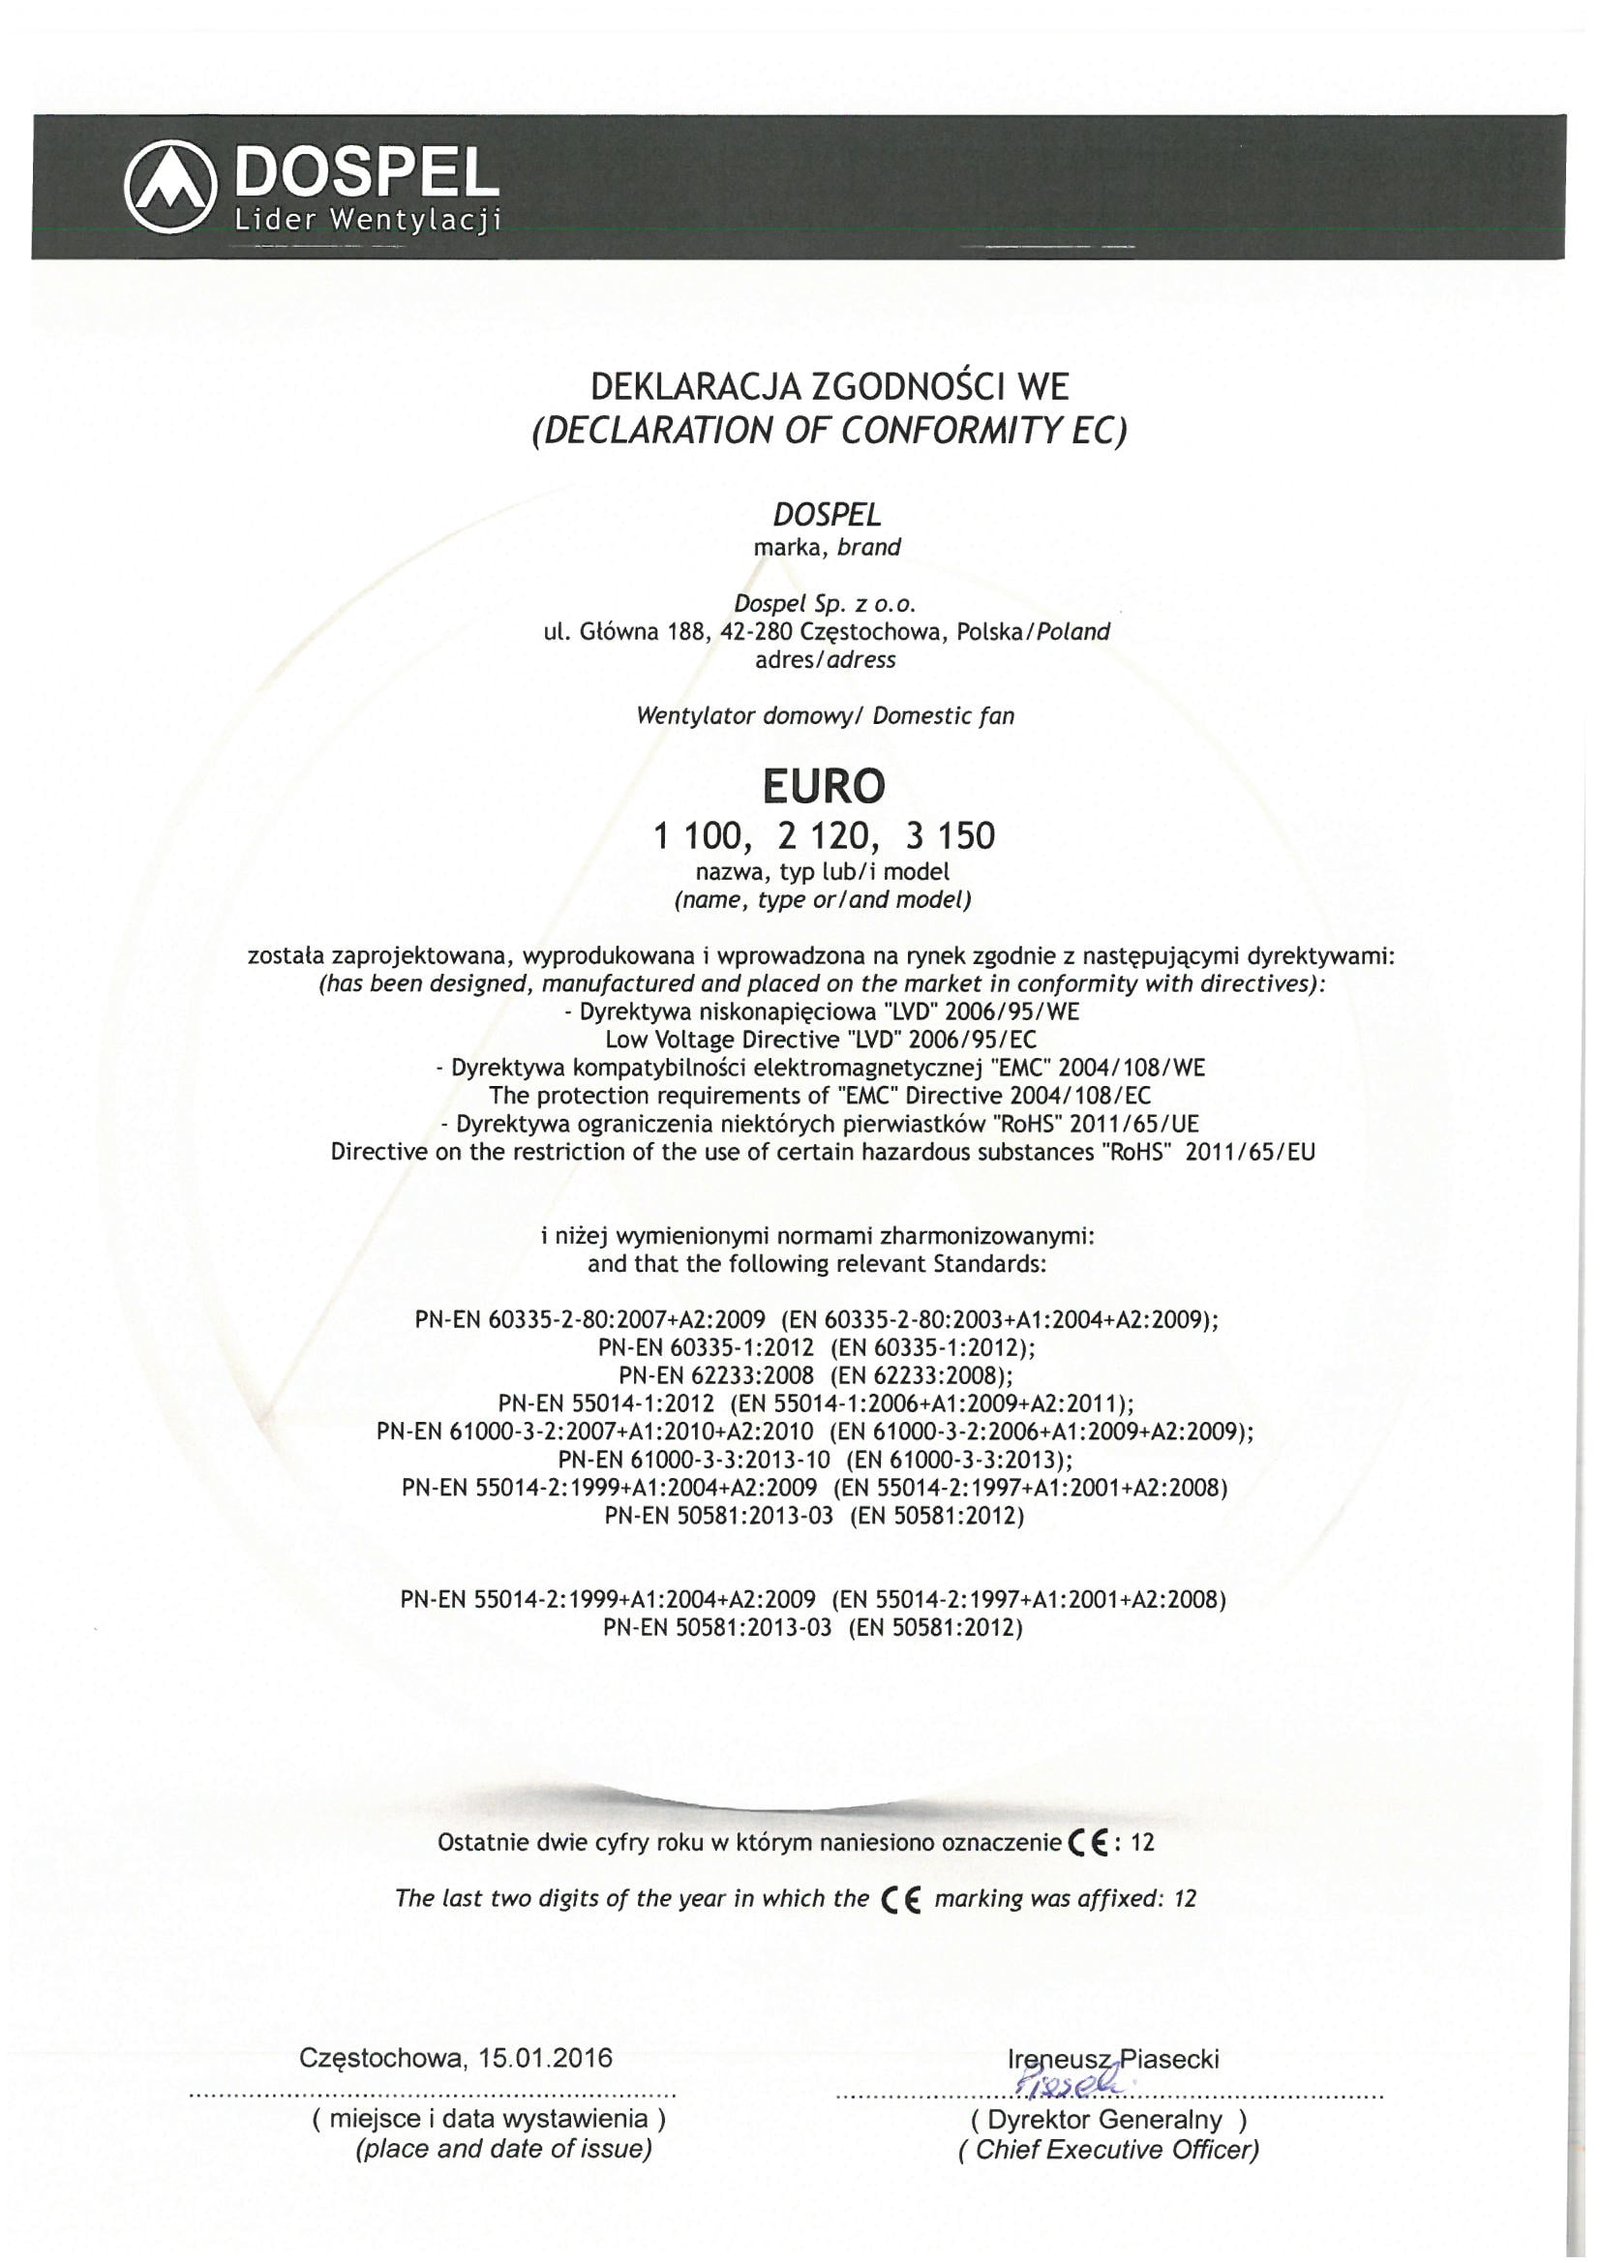 Wentylator domowy, EURO 1, 2, 3, certyfikat, deklaracja zgodności, producent wentylatorów, Dospel